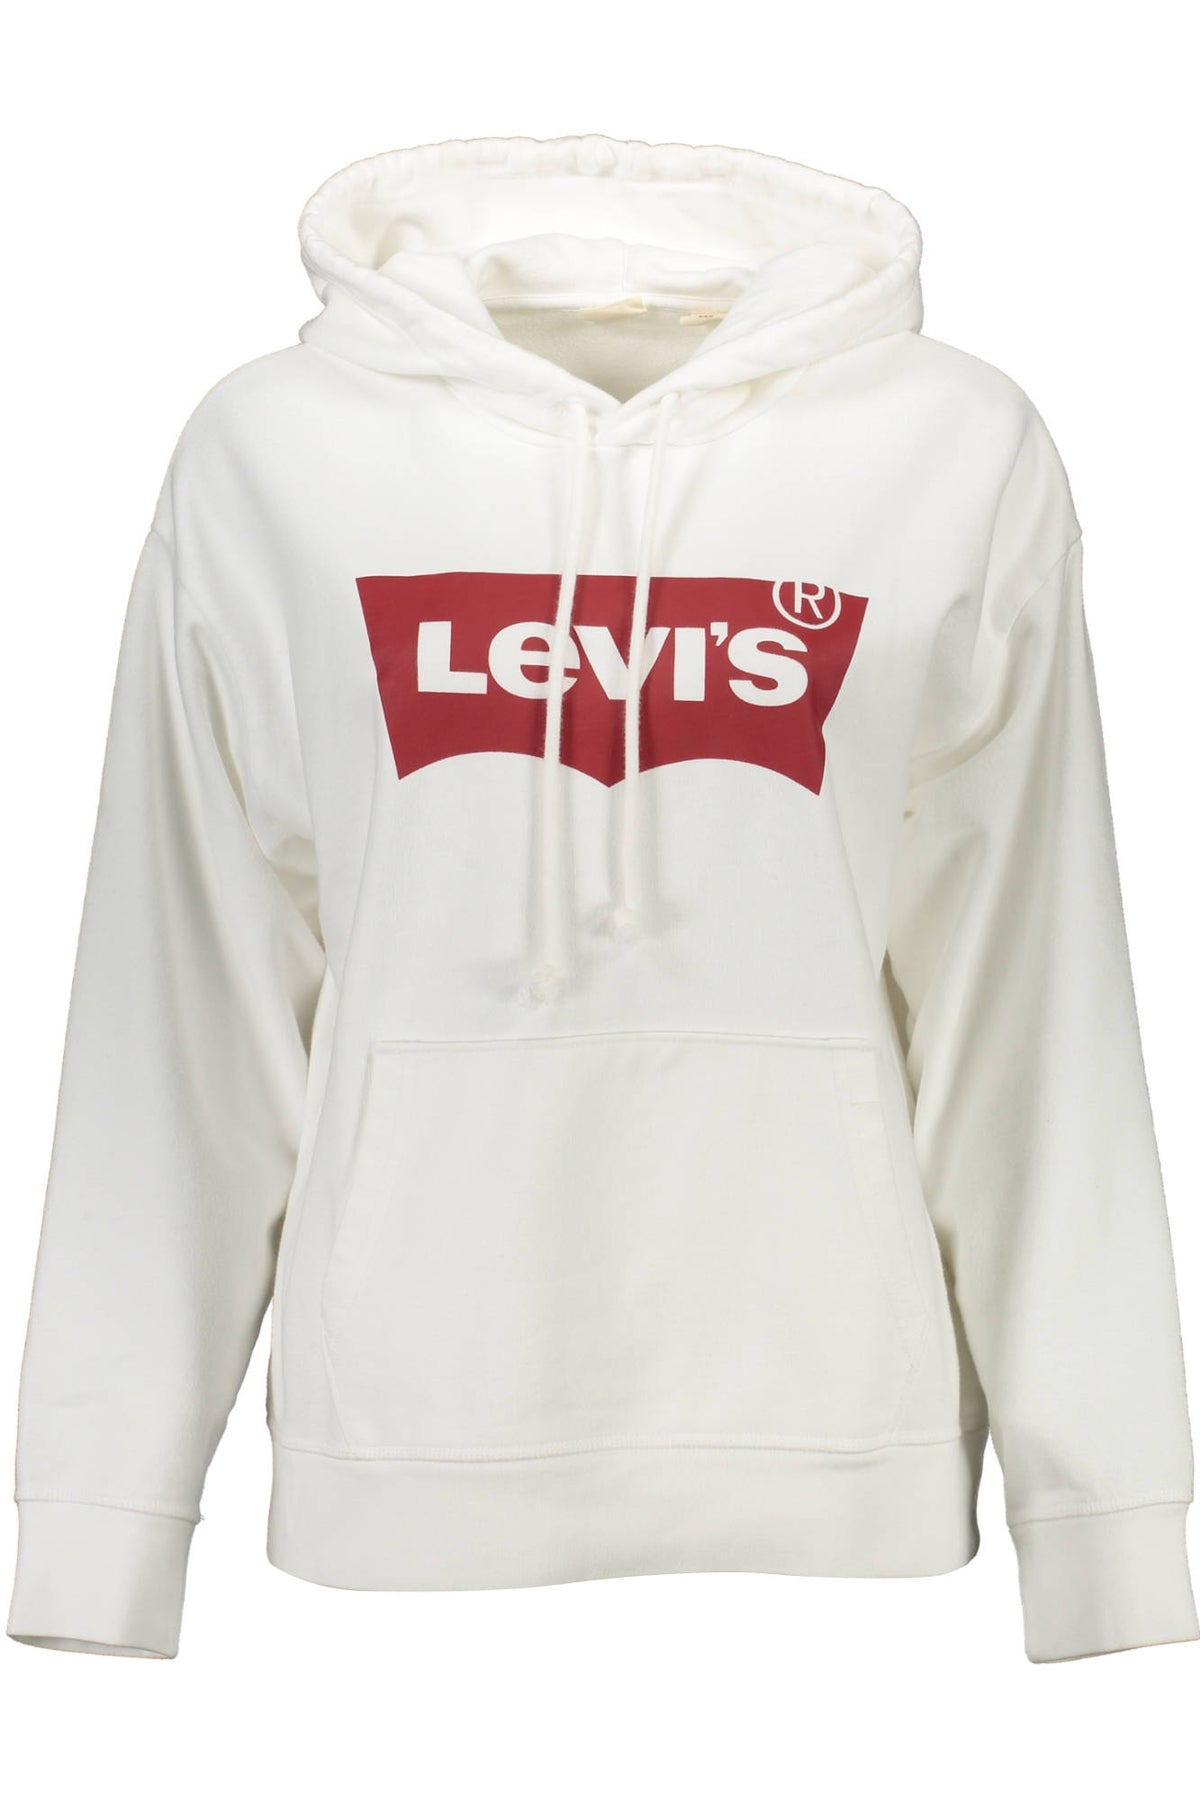 LEVI'S Sweatshirt ohne Reißverschluss Frau